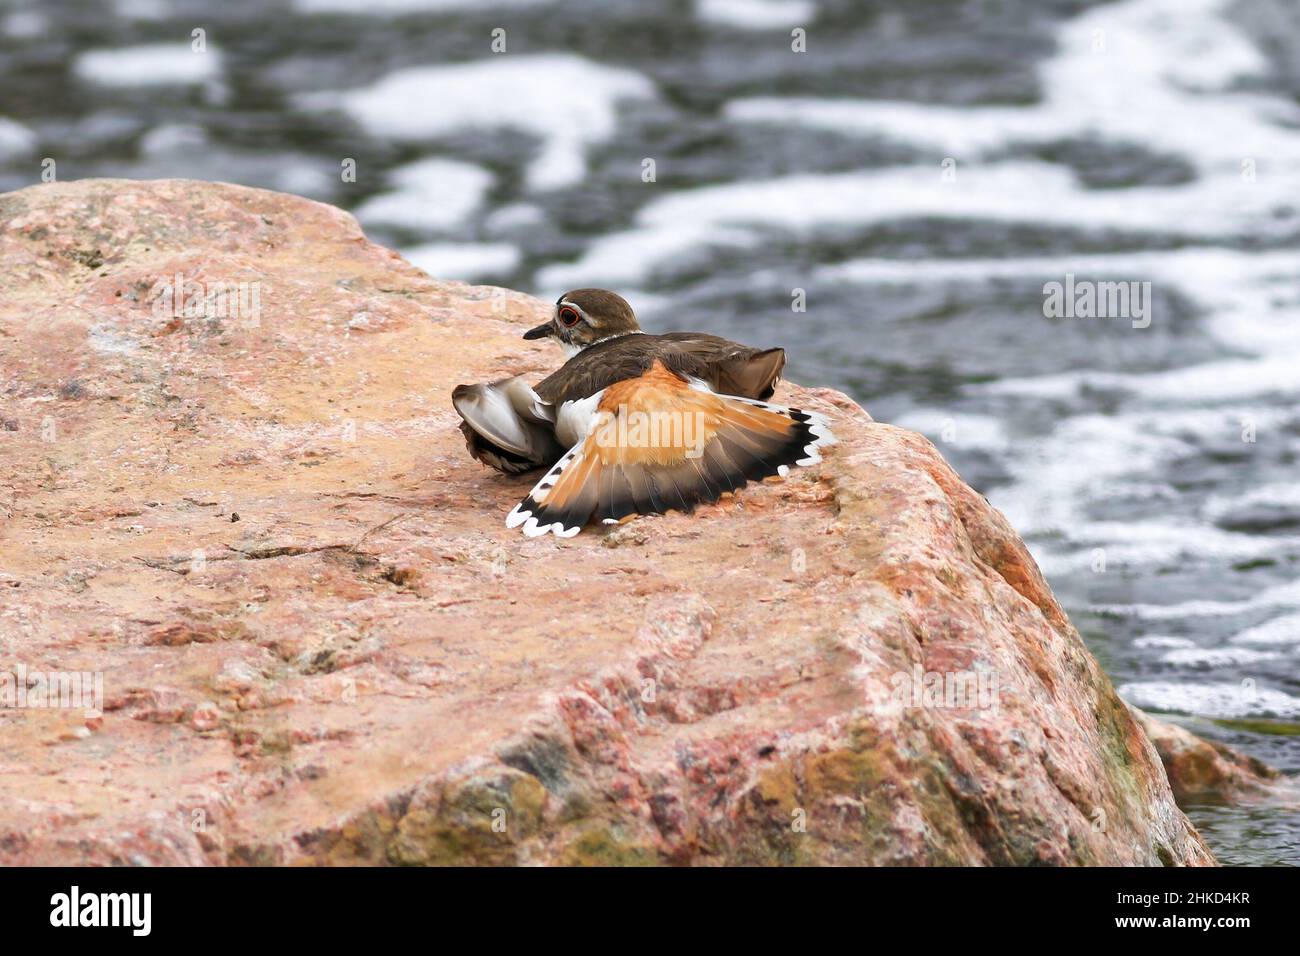 Un oiseau de Killdeer posé sur un rocher de granit rose par un ruisseau, montrant le comportement d'aile cassée, y compris les plumes de queue enjambées. Banque D'Images